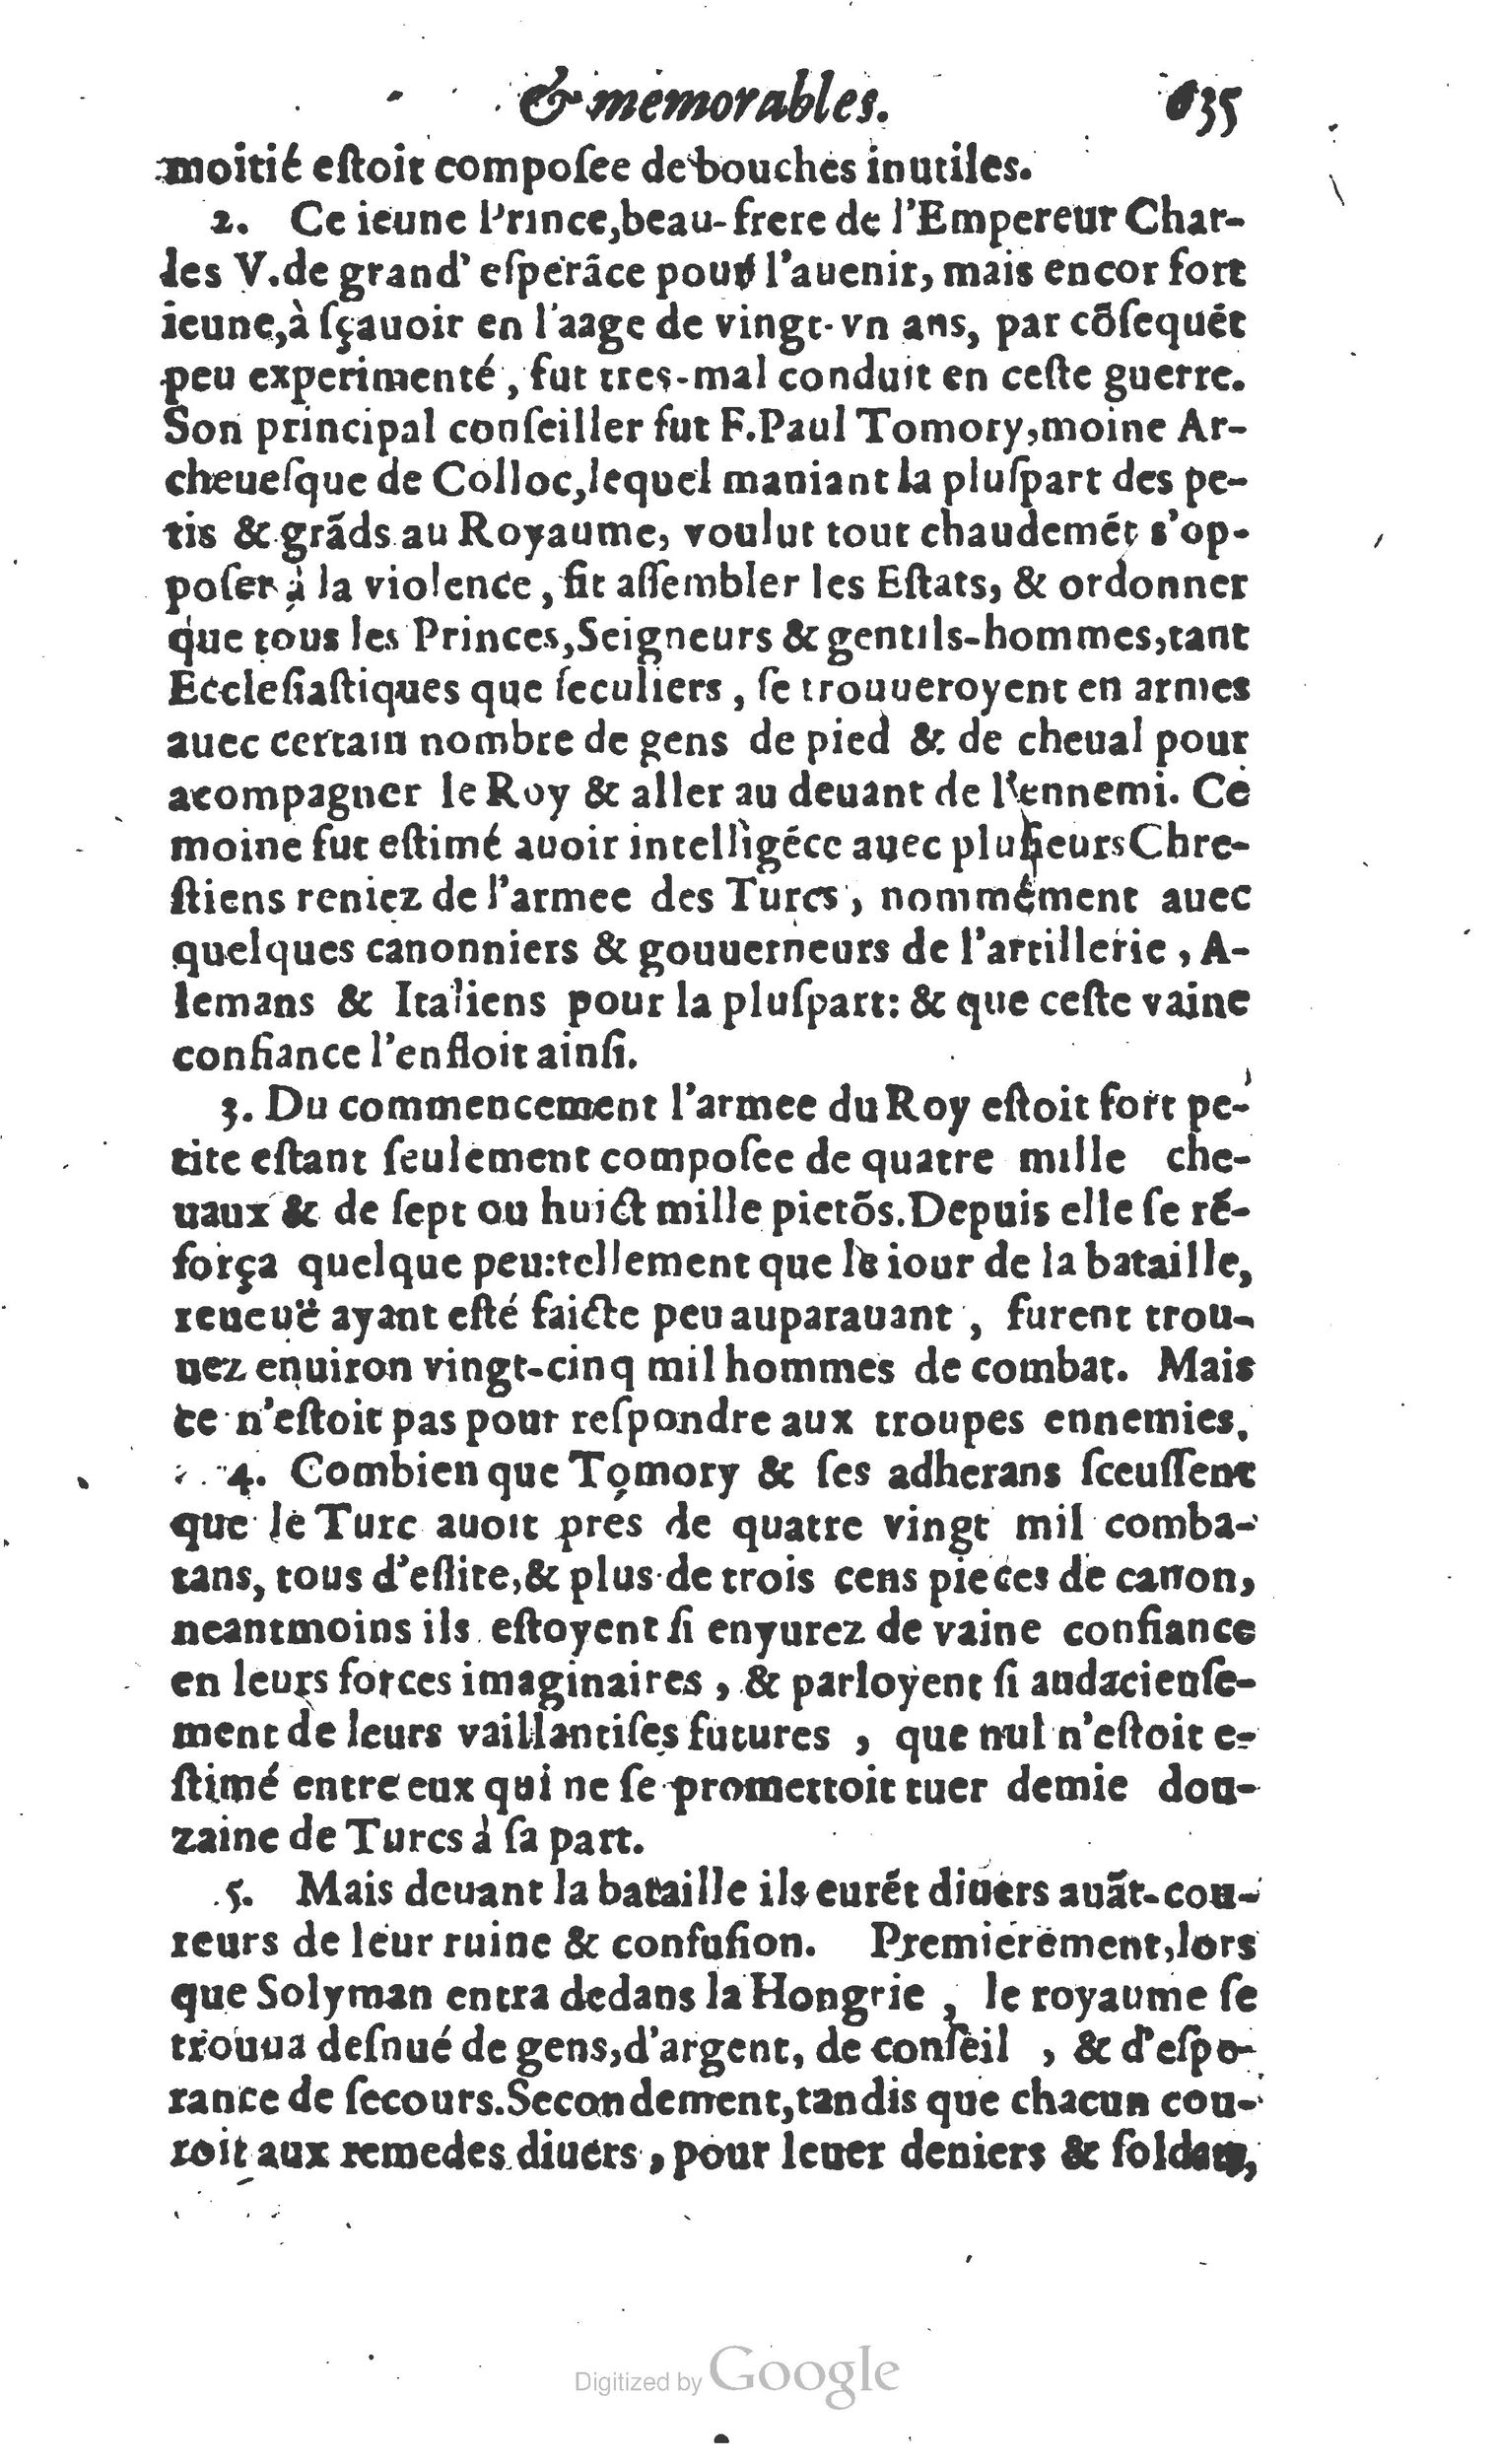 1610 Trésor d’histoires admirables et mémorables de nostre temps Marceau Princeton_Page_0656.jpg